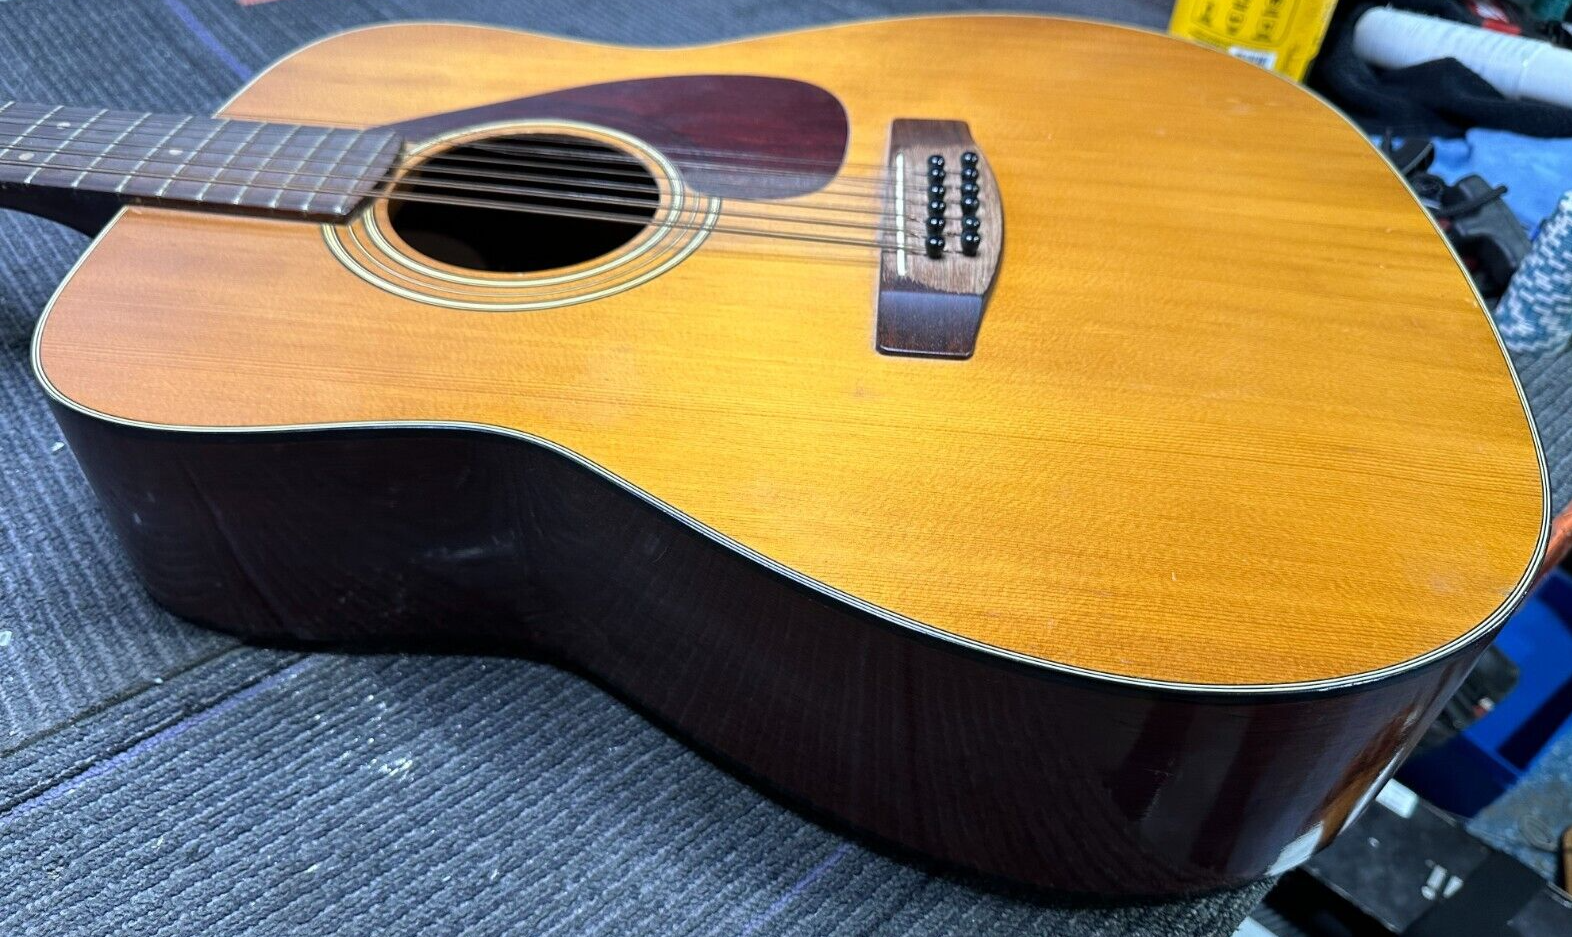 Yamaha FG260 12 String Acoustic Guitar *(LOCAL PICKUP)* 3